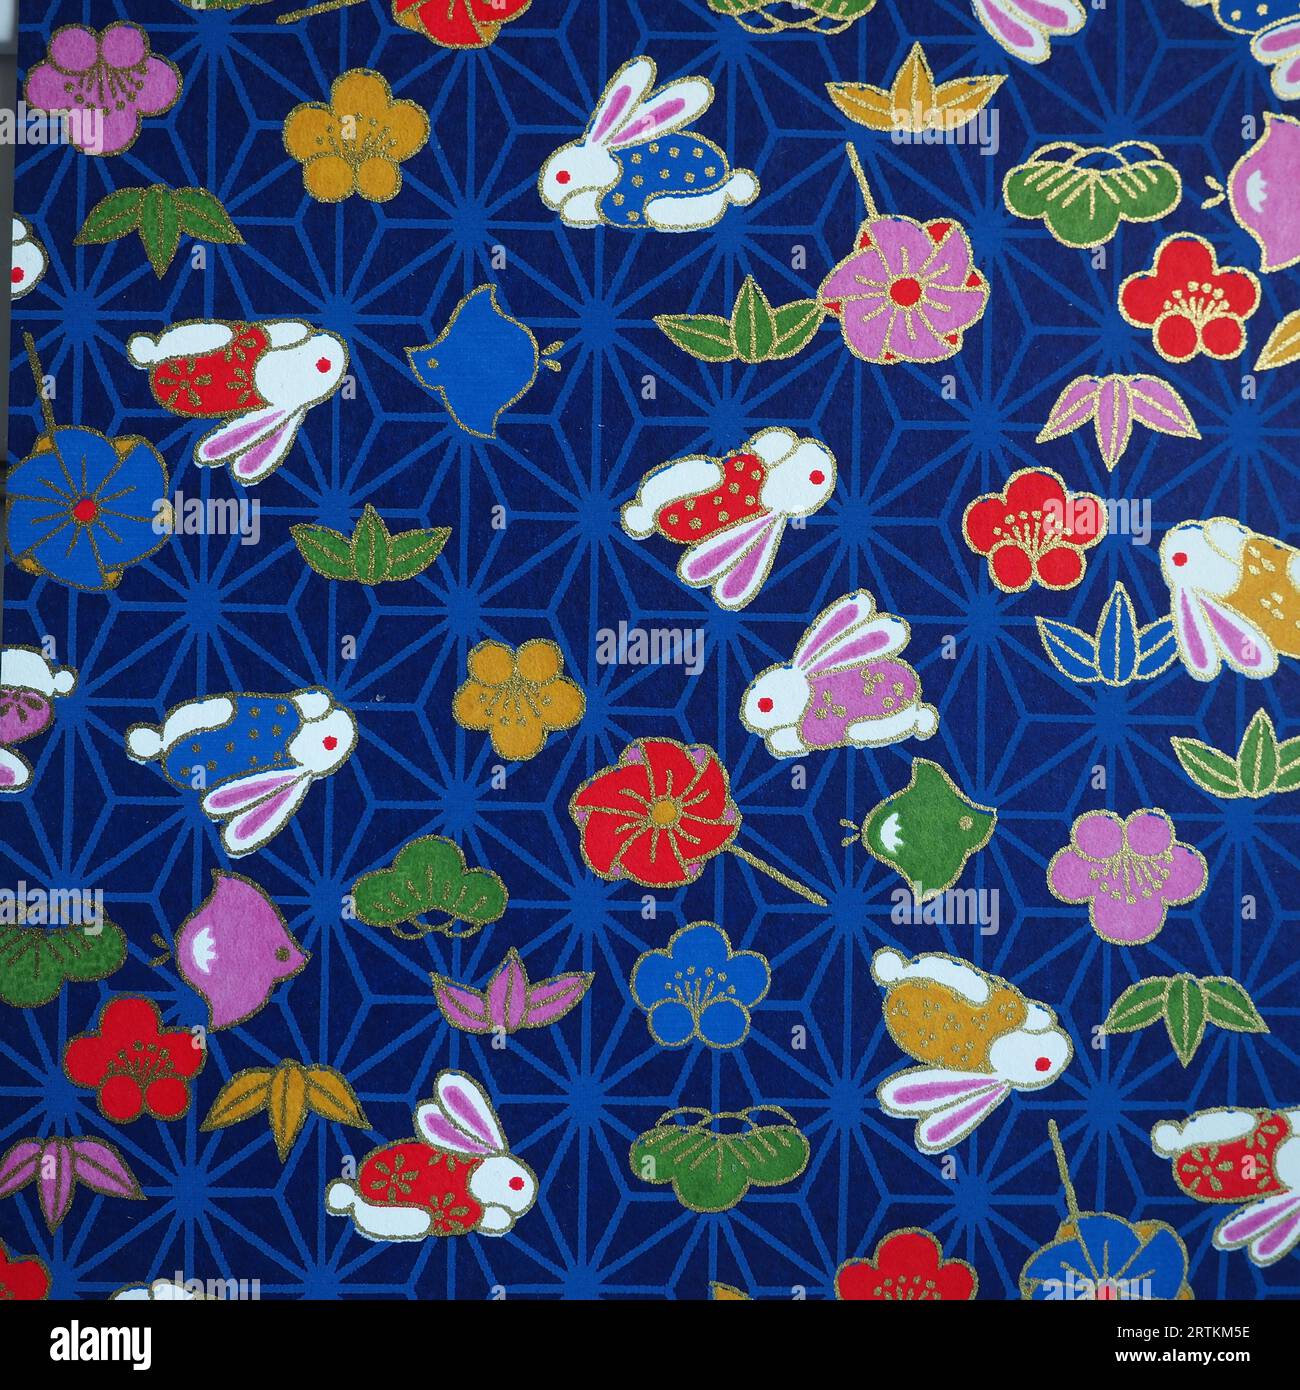 Motifs traditionnels japonais avec des fleurs, lapin zodiaque et fond bleu foncé Banque D'Images